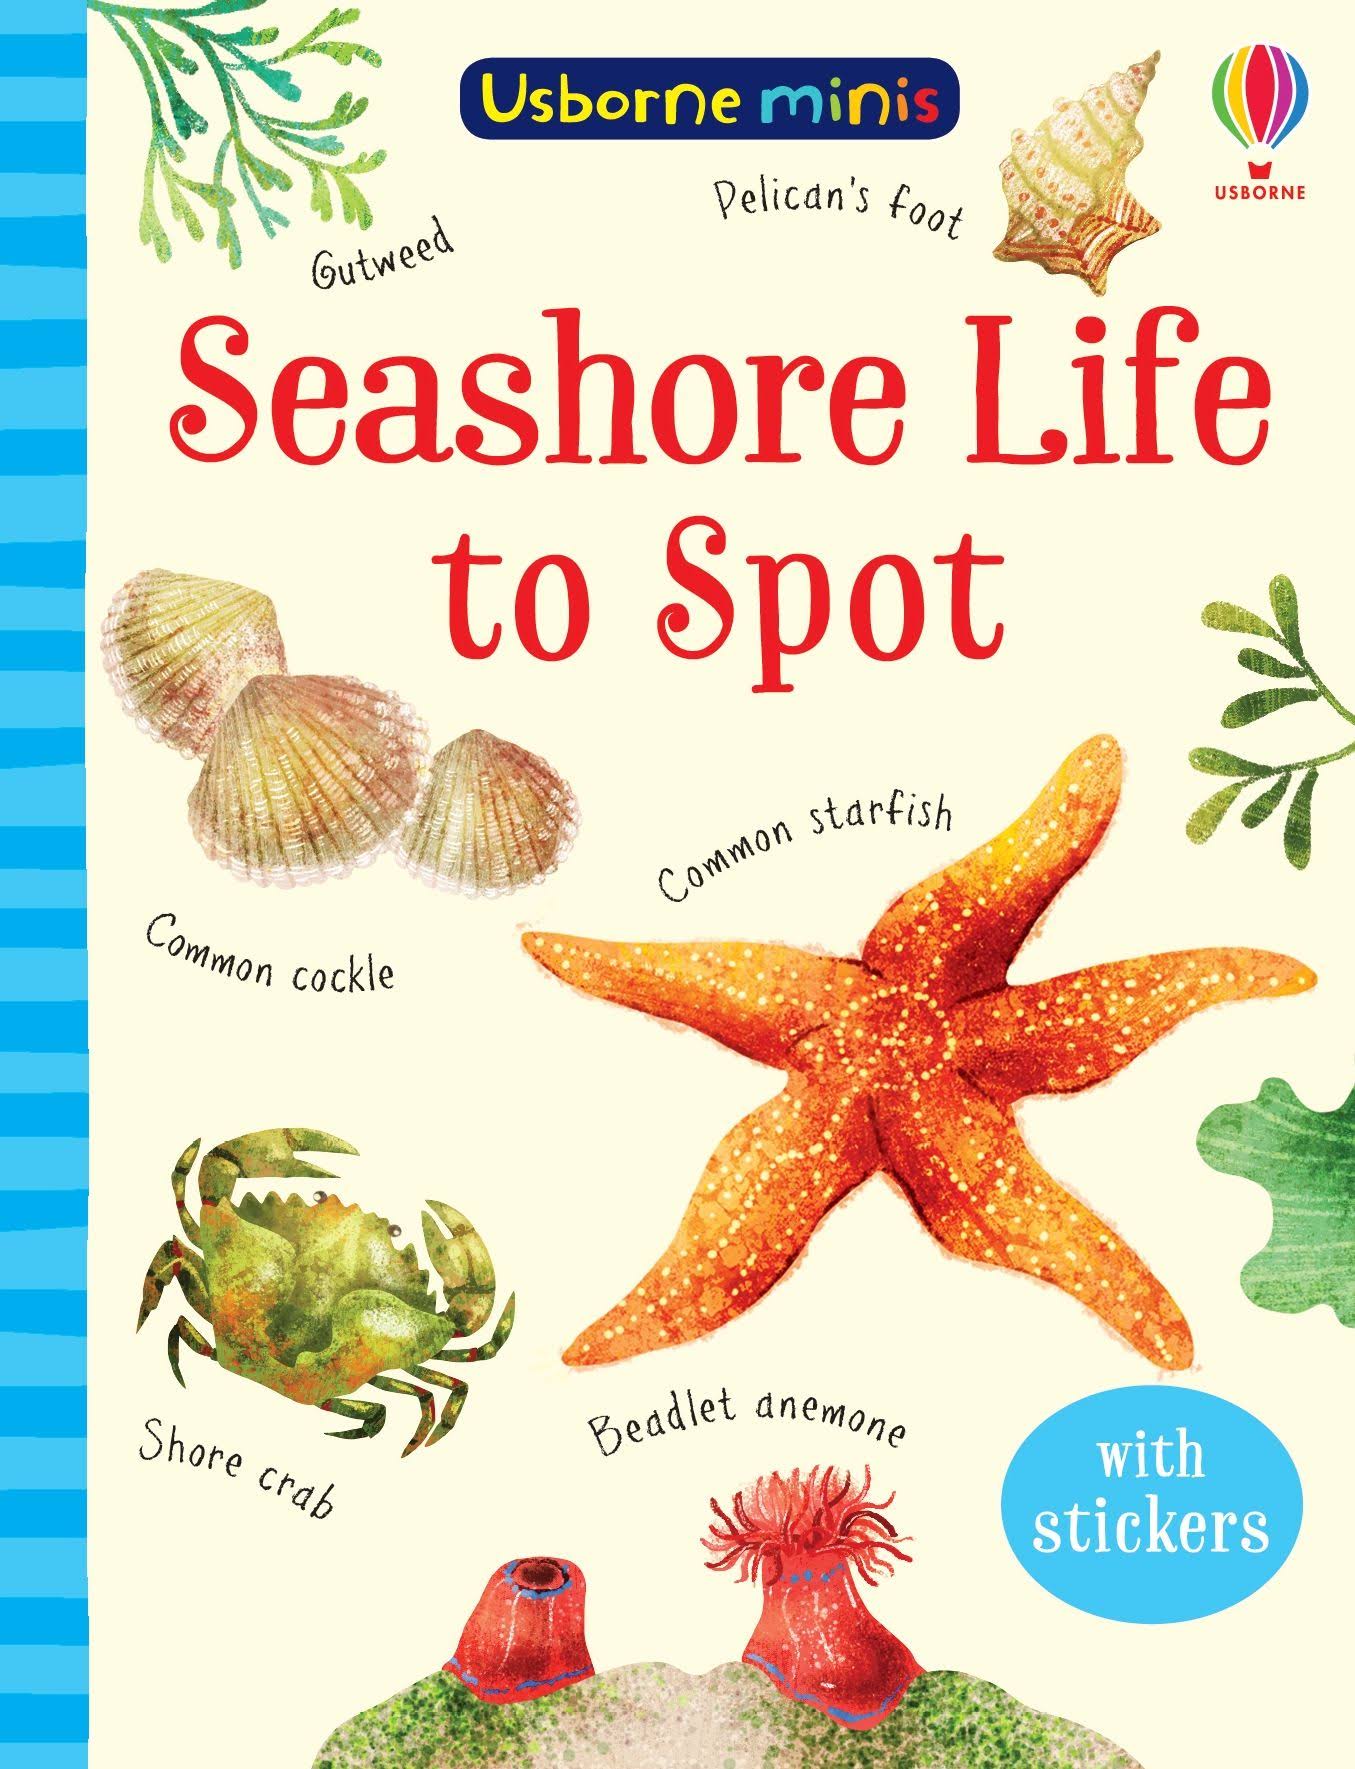 Seashore Life to Spot by Sam Smith